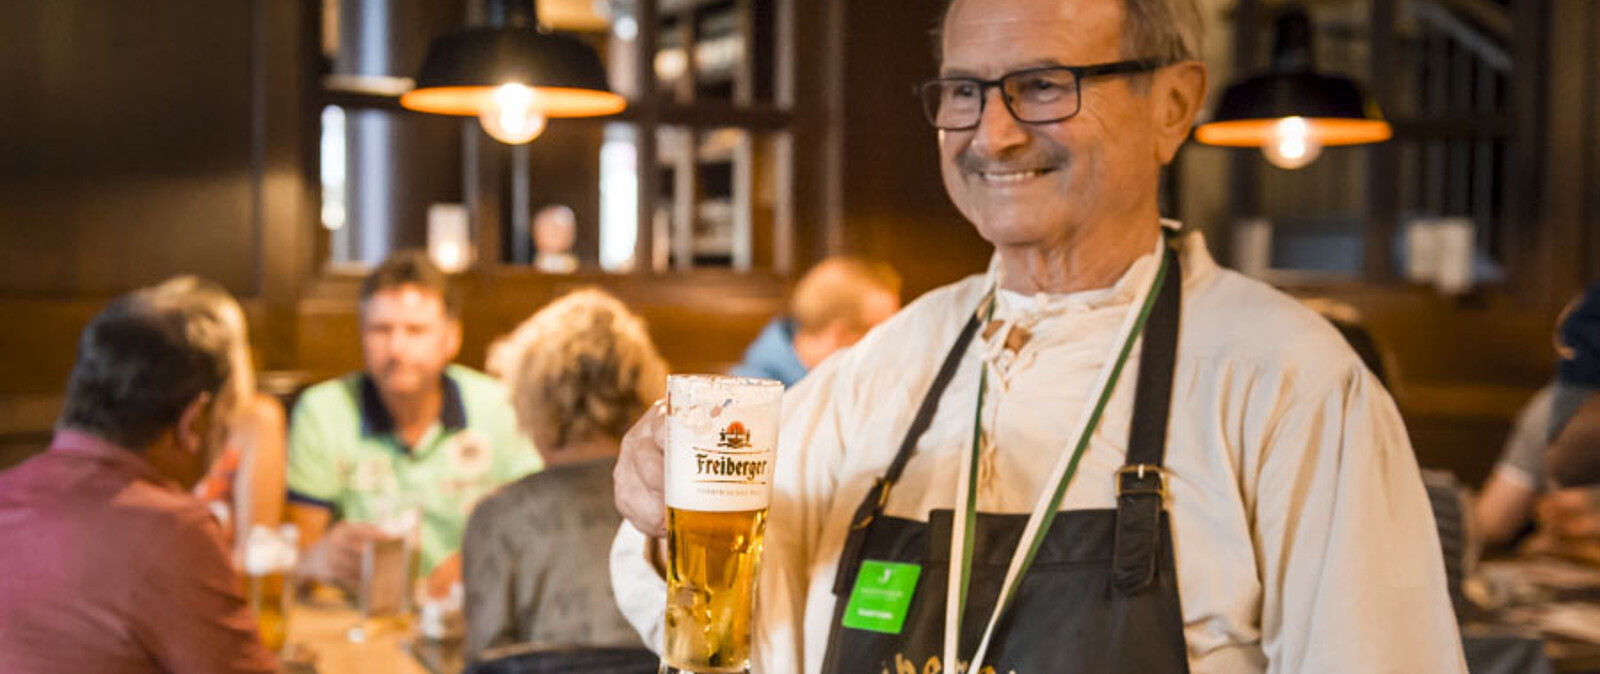 Mit Ankunft im Watzke oder im Freiberger Schankhaus genießen wir köstliche Freiberger Bierspezialitäten.